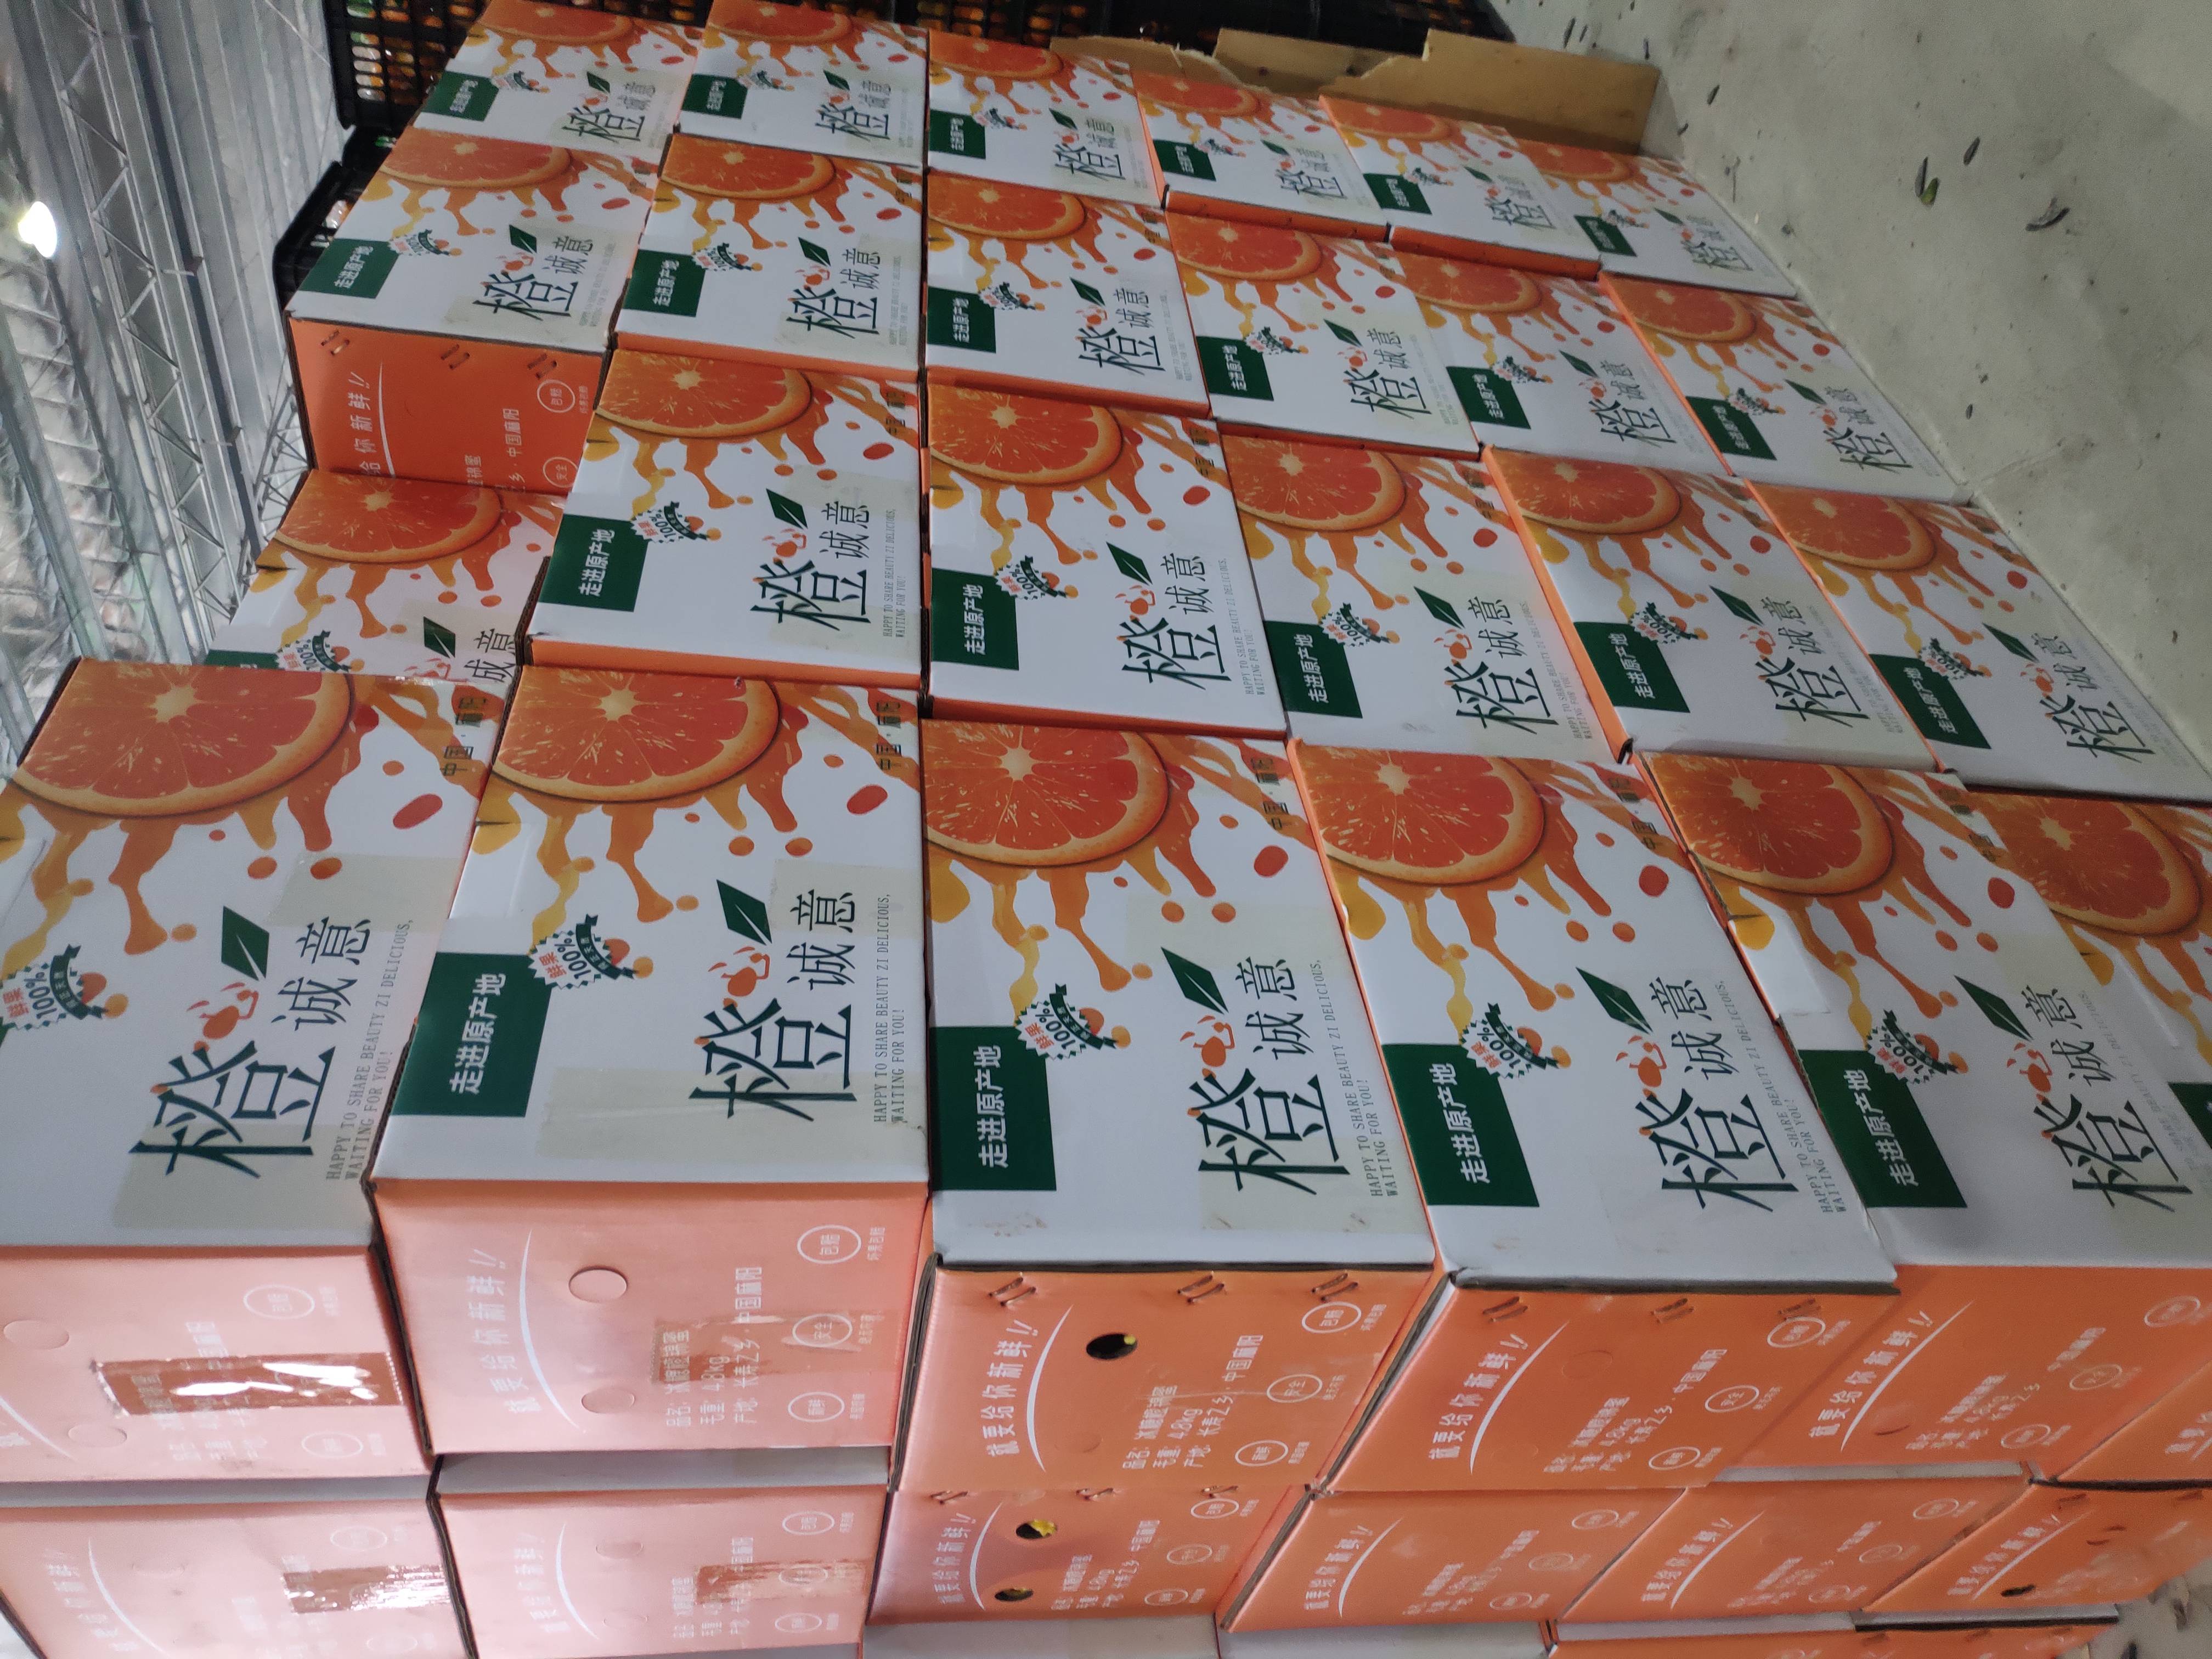 拜年送礼最重诚心，橙心诚意礼盒装冰糖橙，过年送礼必备礼品。一盒批发价19.9元，起批量1000件。